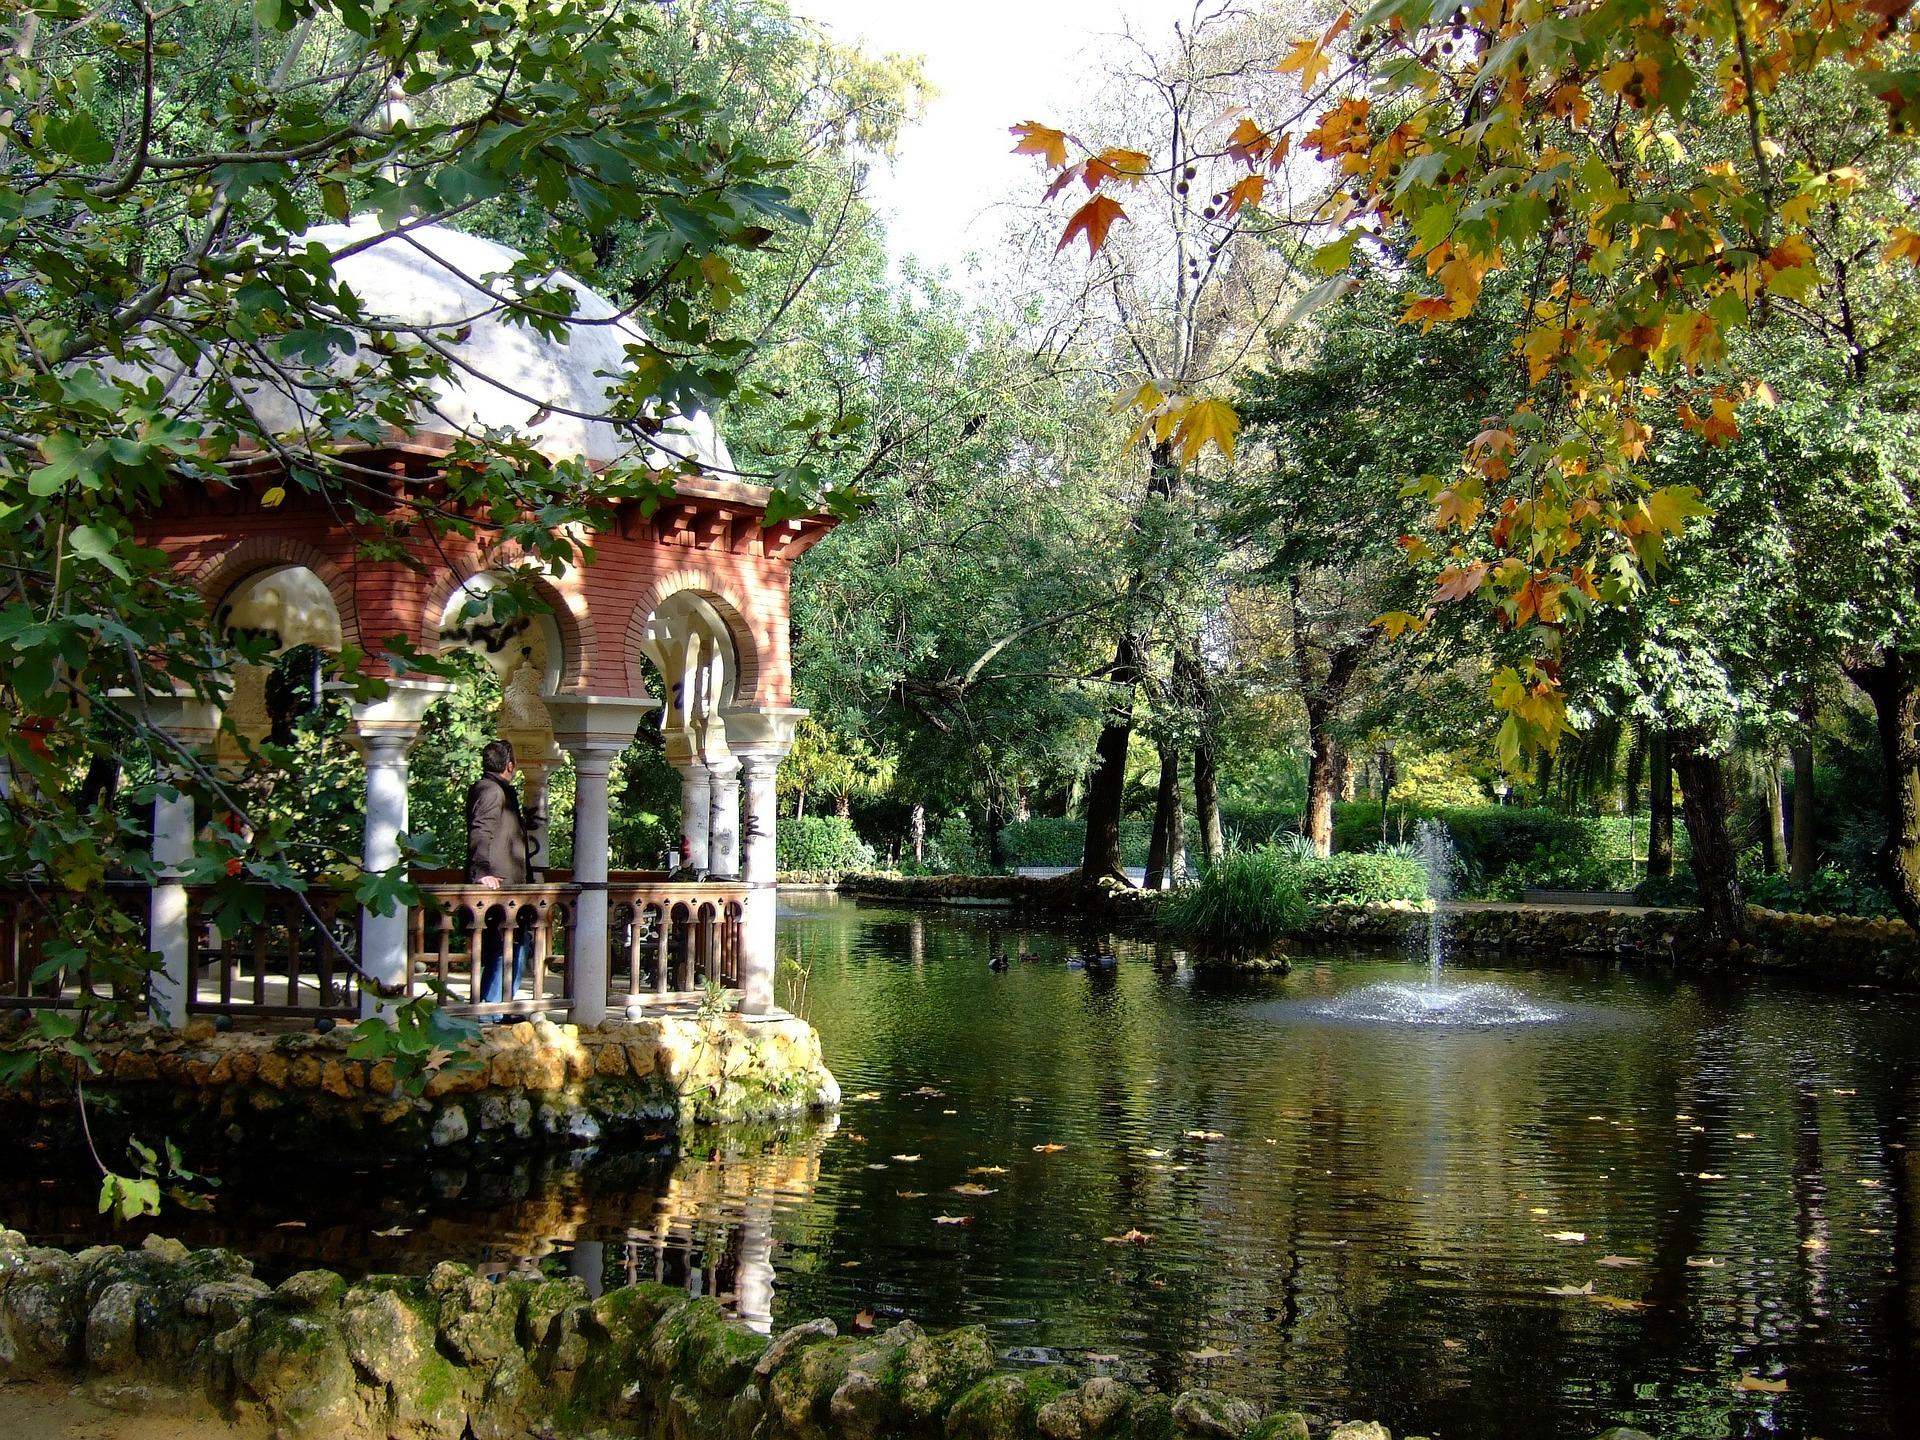 Cover image of this place Parque de María Luisa